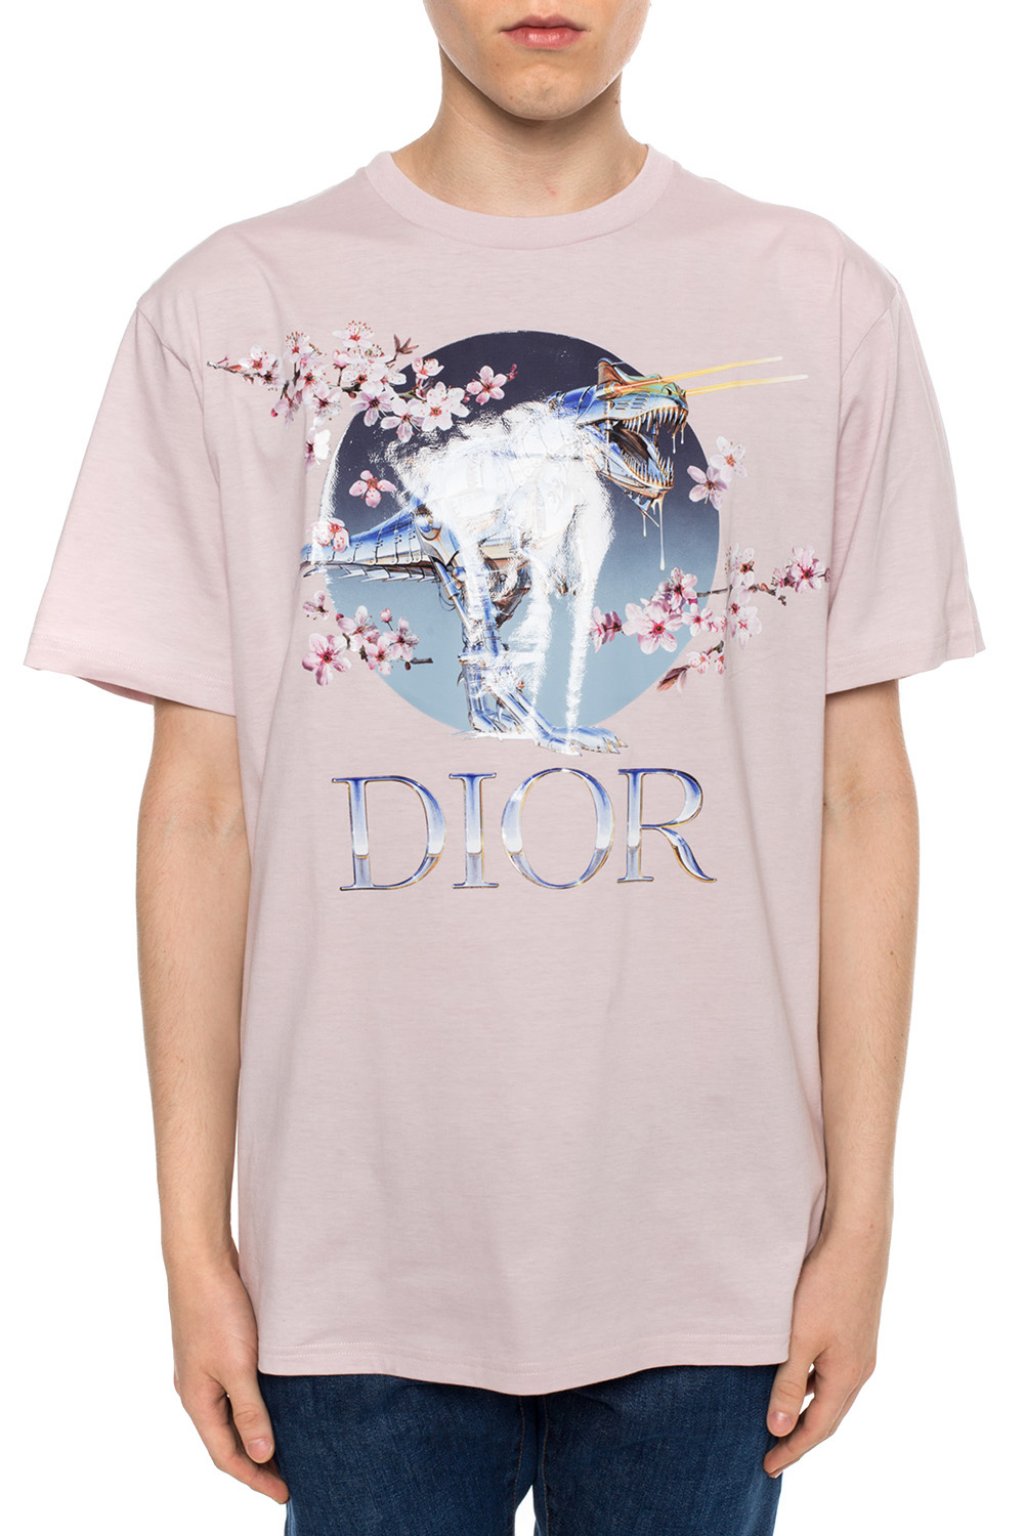 Dior Homme x Hajime Sorayama Shirt  eBay